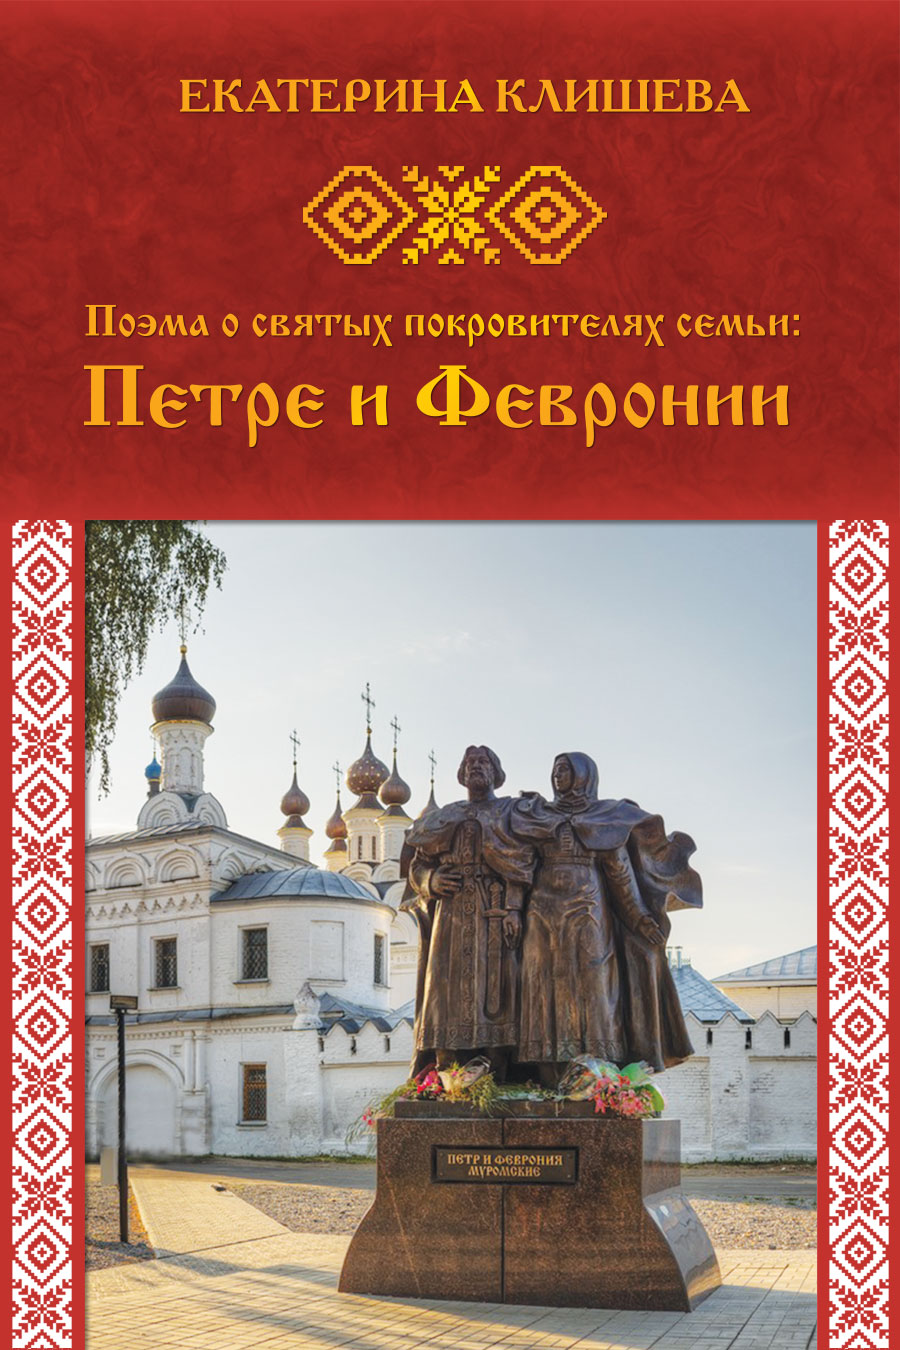 "Поэма о святых покровителях семьи: Петре и Февронии" - обложка